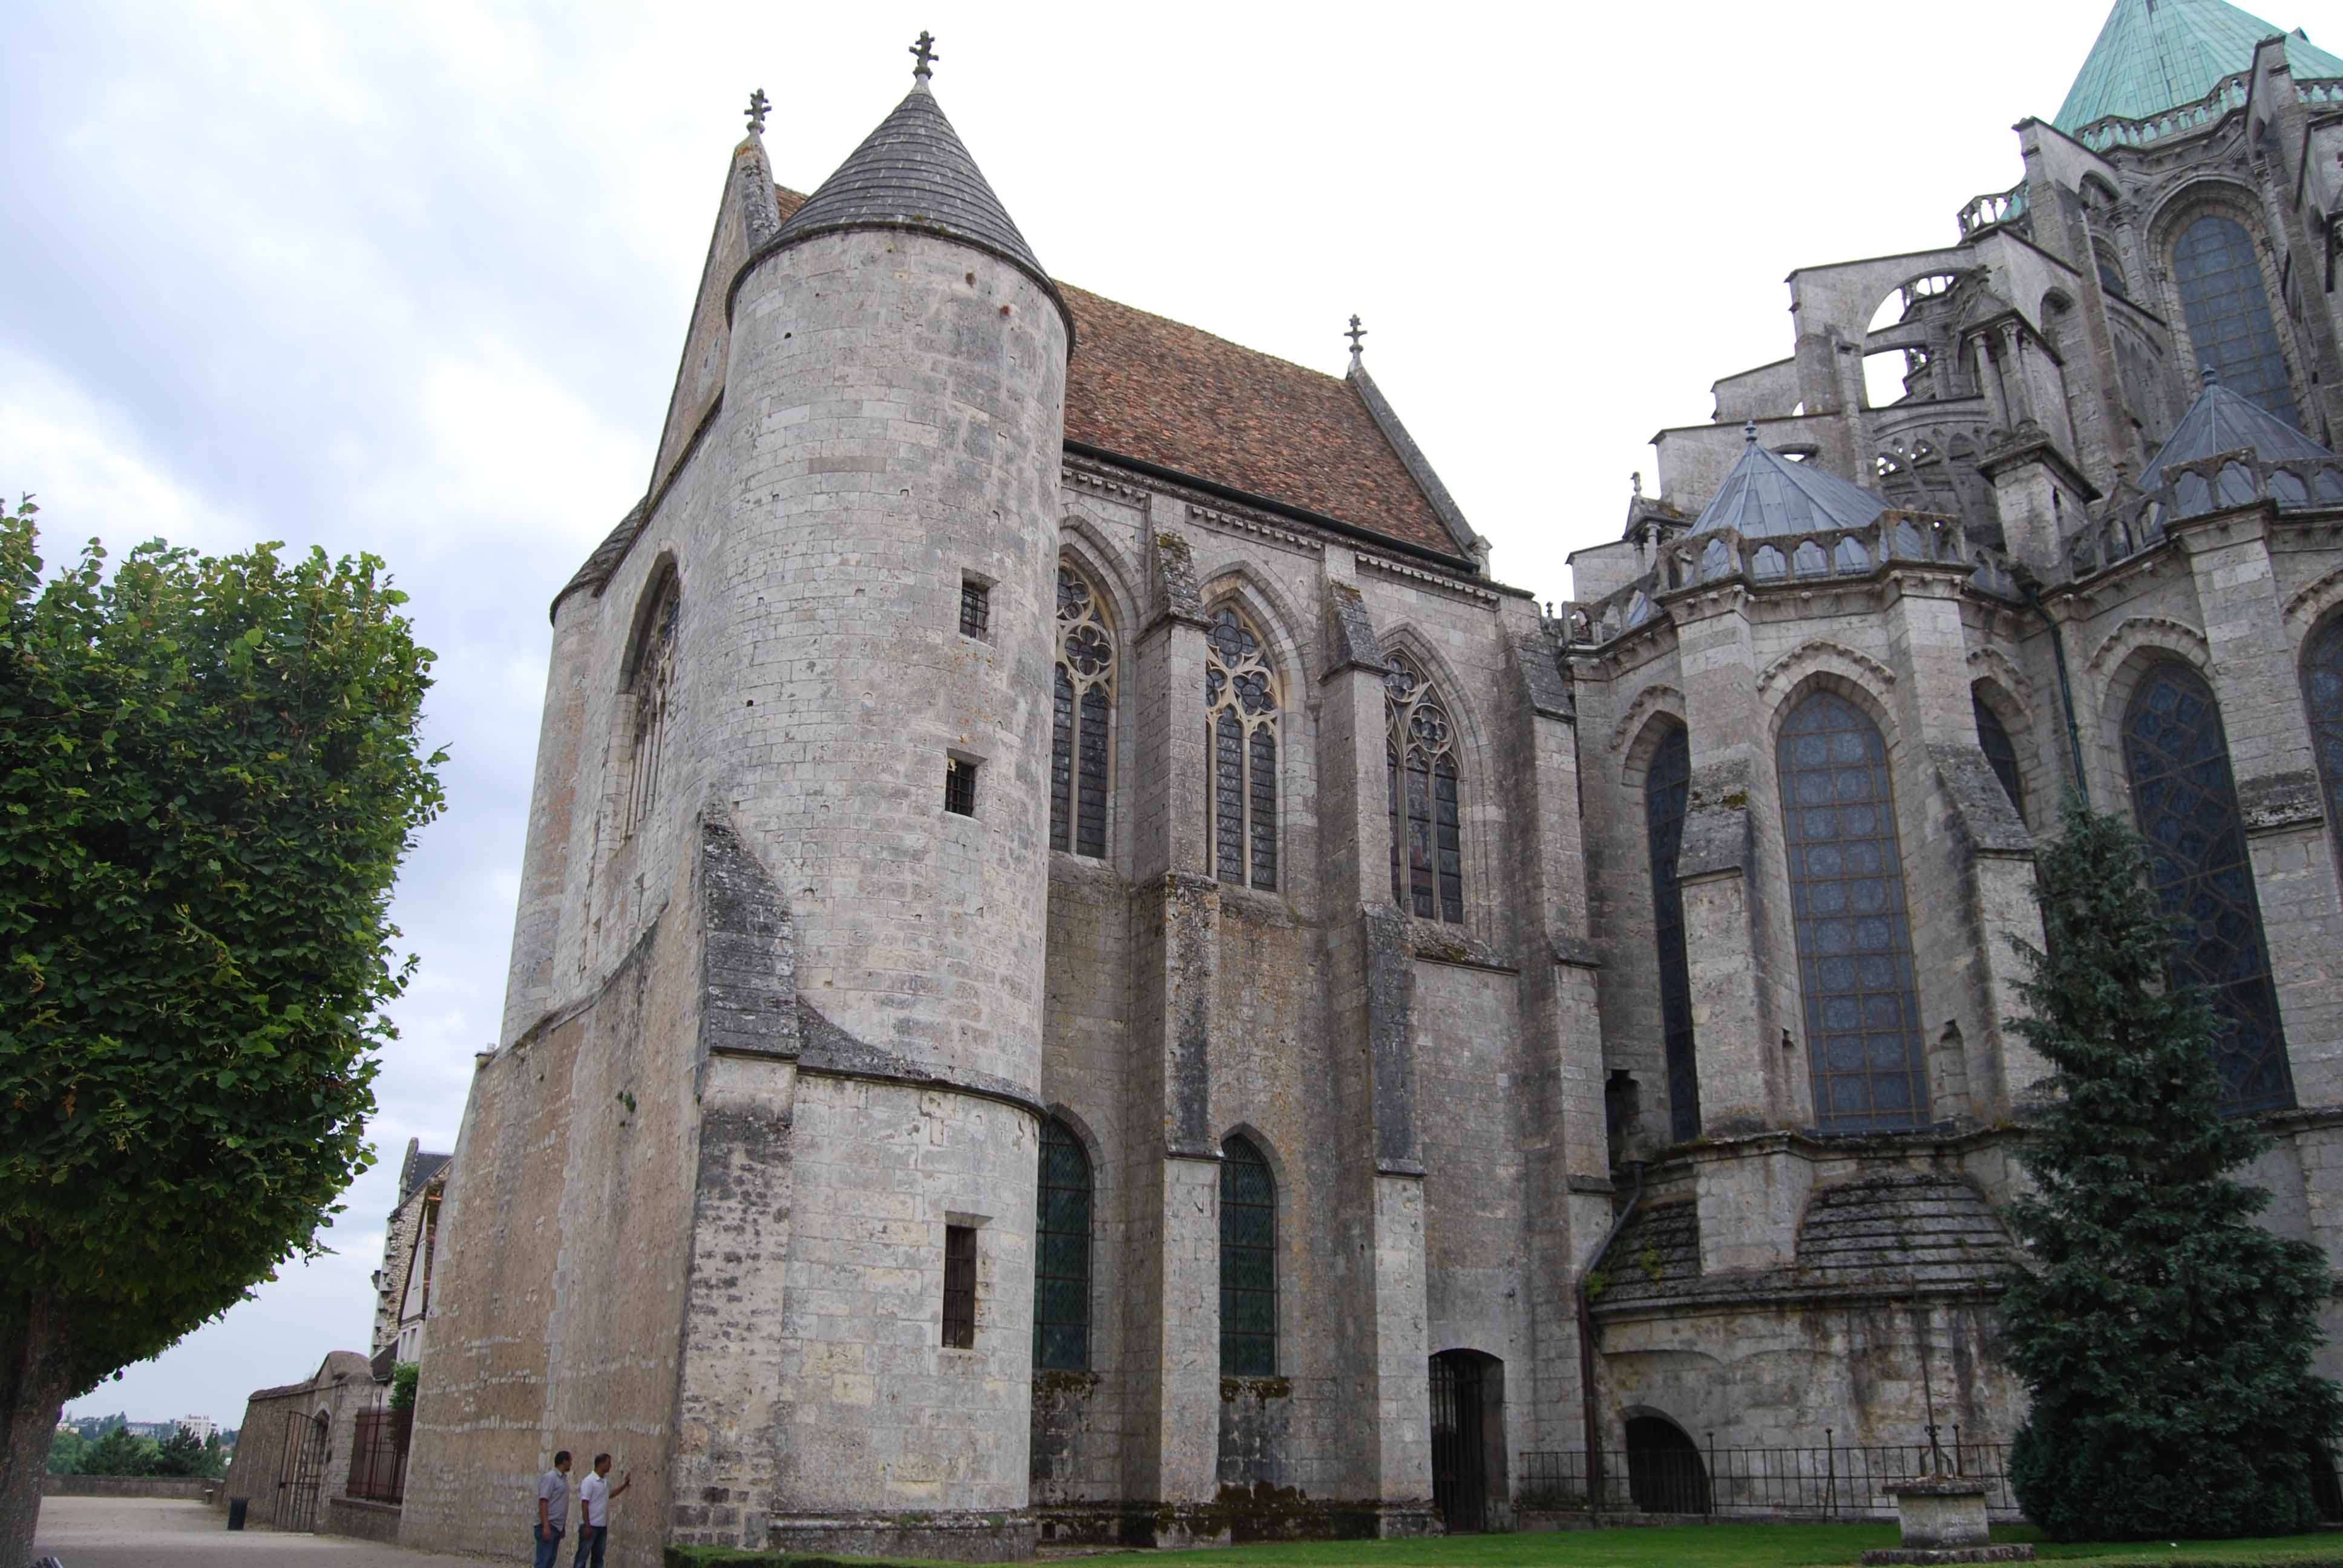 Arquitectura de la catedral de Chartres - Chartres: Arte, espiritualidad y esoterismo. (11)